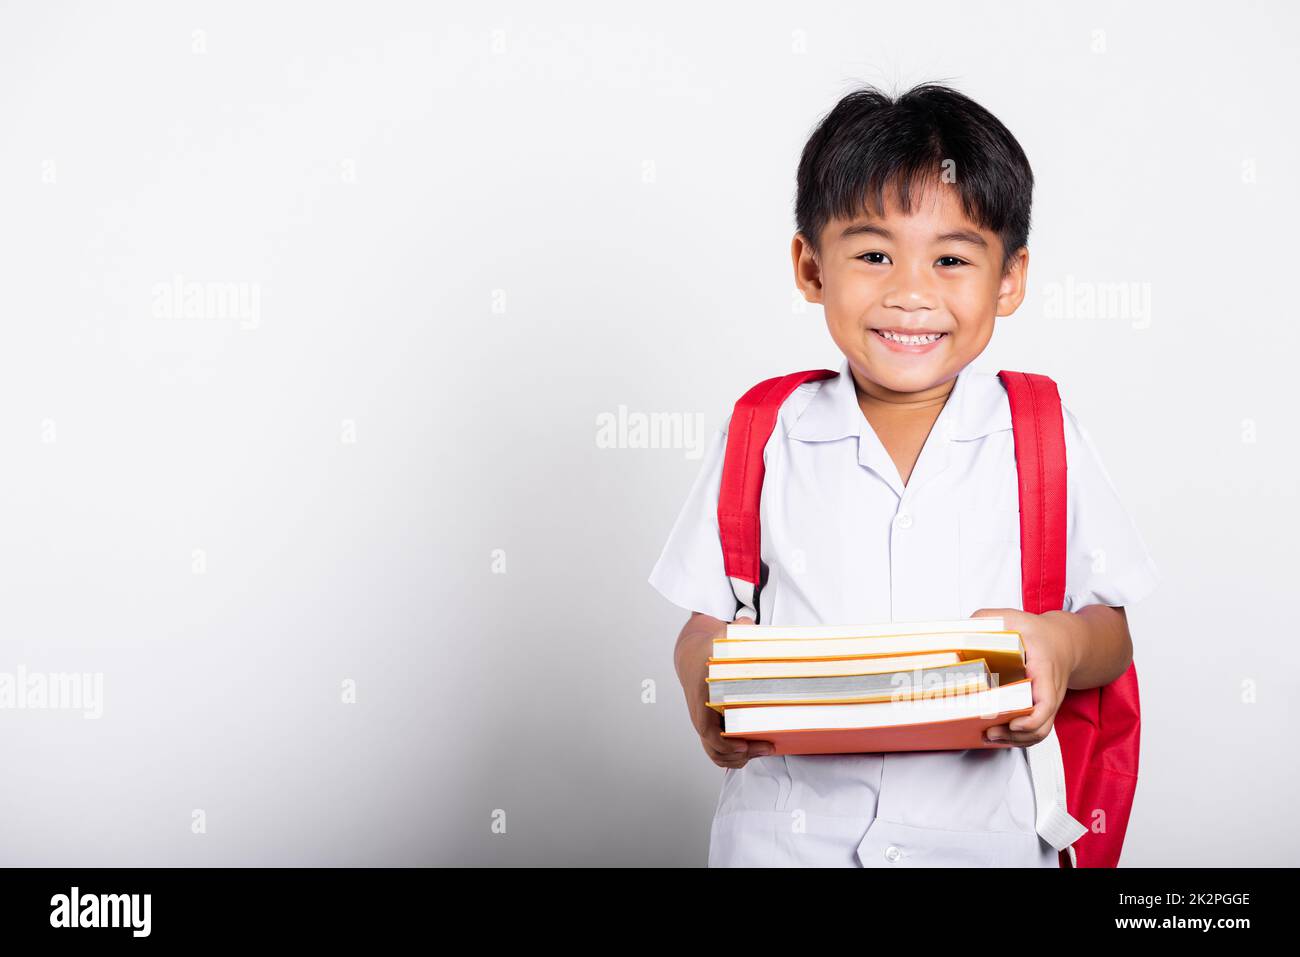 Asiatique adorable tout-petit souriant heureux portant étudiant thaïlandais uniforme pantalon rouge stand livres pour l'étude prêt pour l'école Banque D'Images